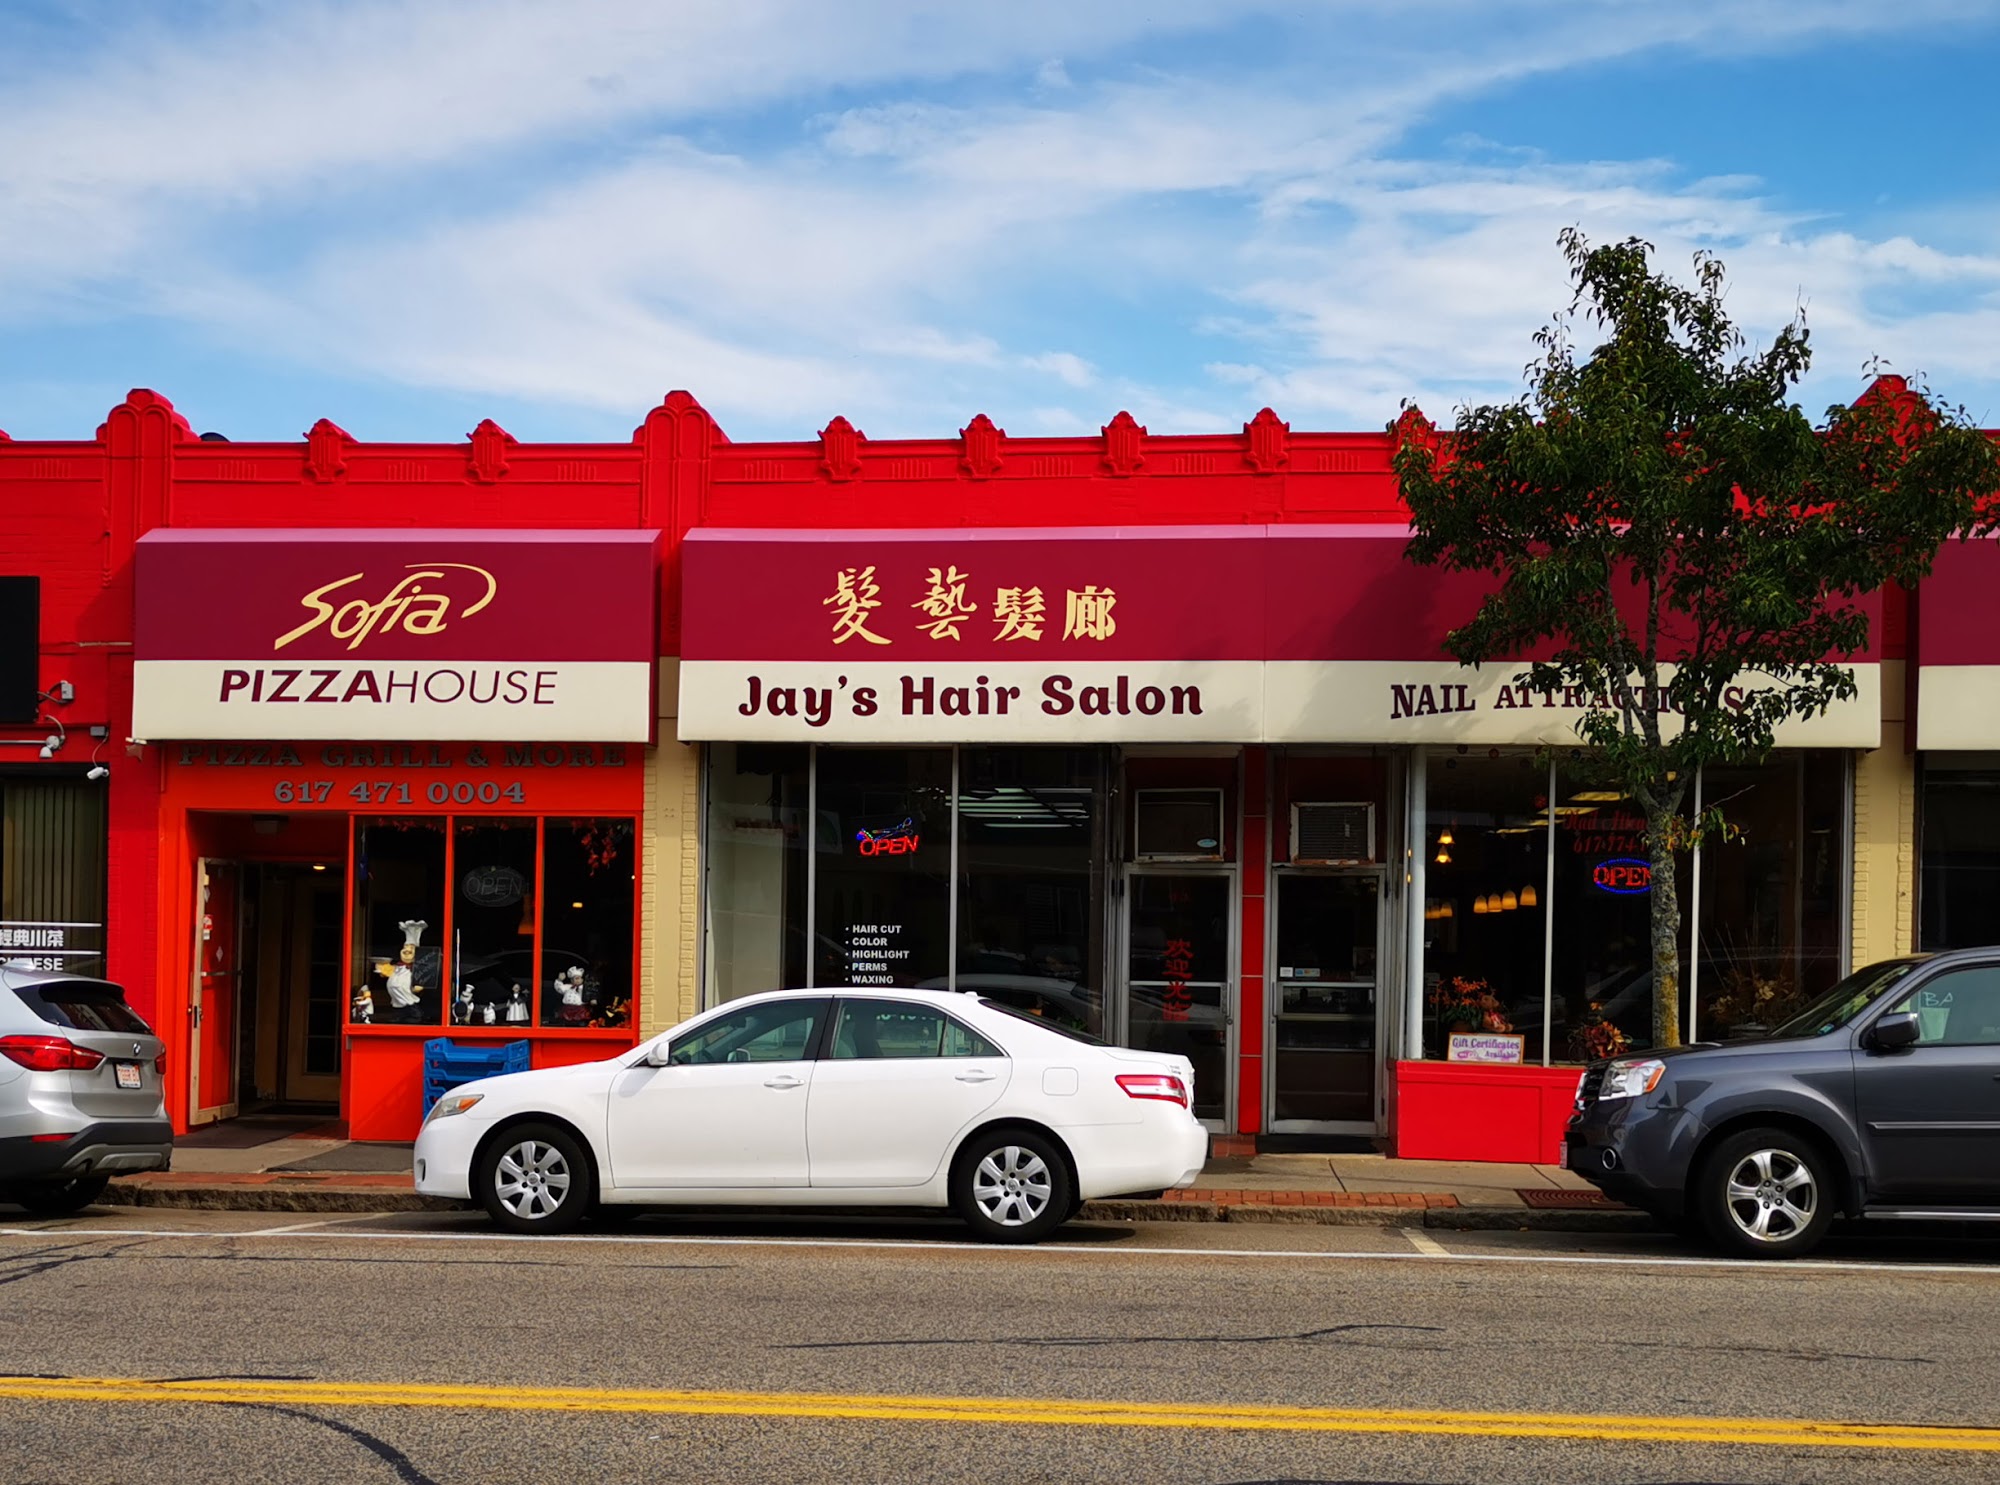 Jay's Hair Salon